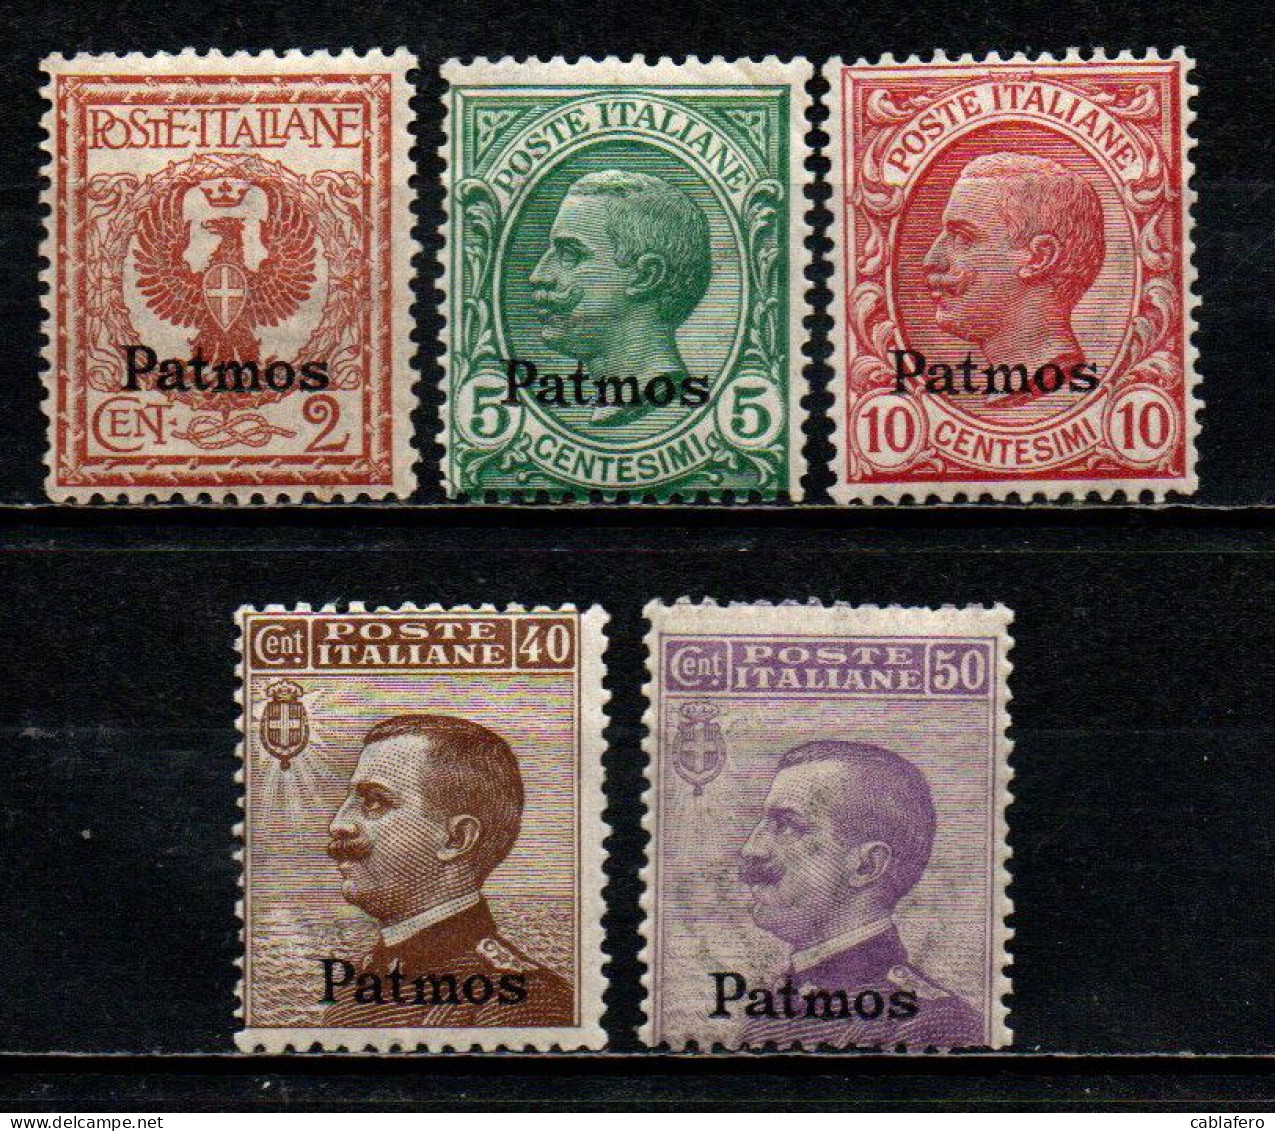 COLONIE ITALIANE - PATMO - 1912 - EFFIGIE DEL RE VITTORIO EMANUELE III - MNH - Ägäis (Patmo)